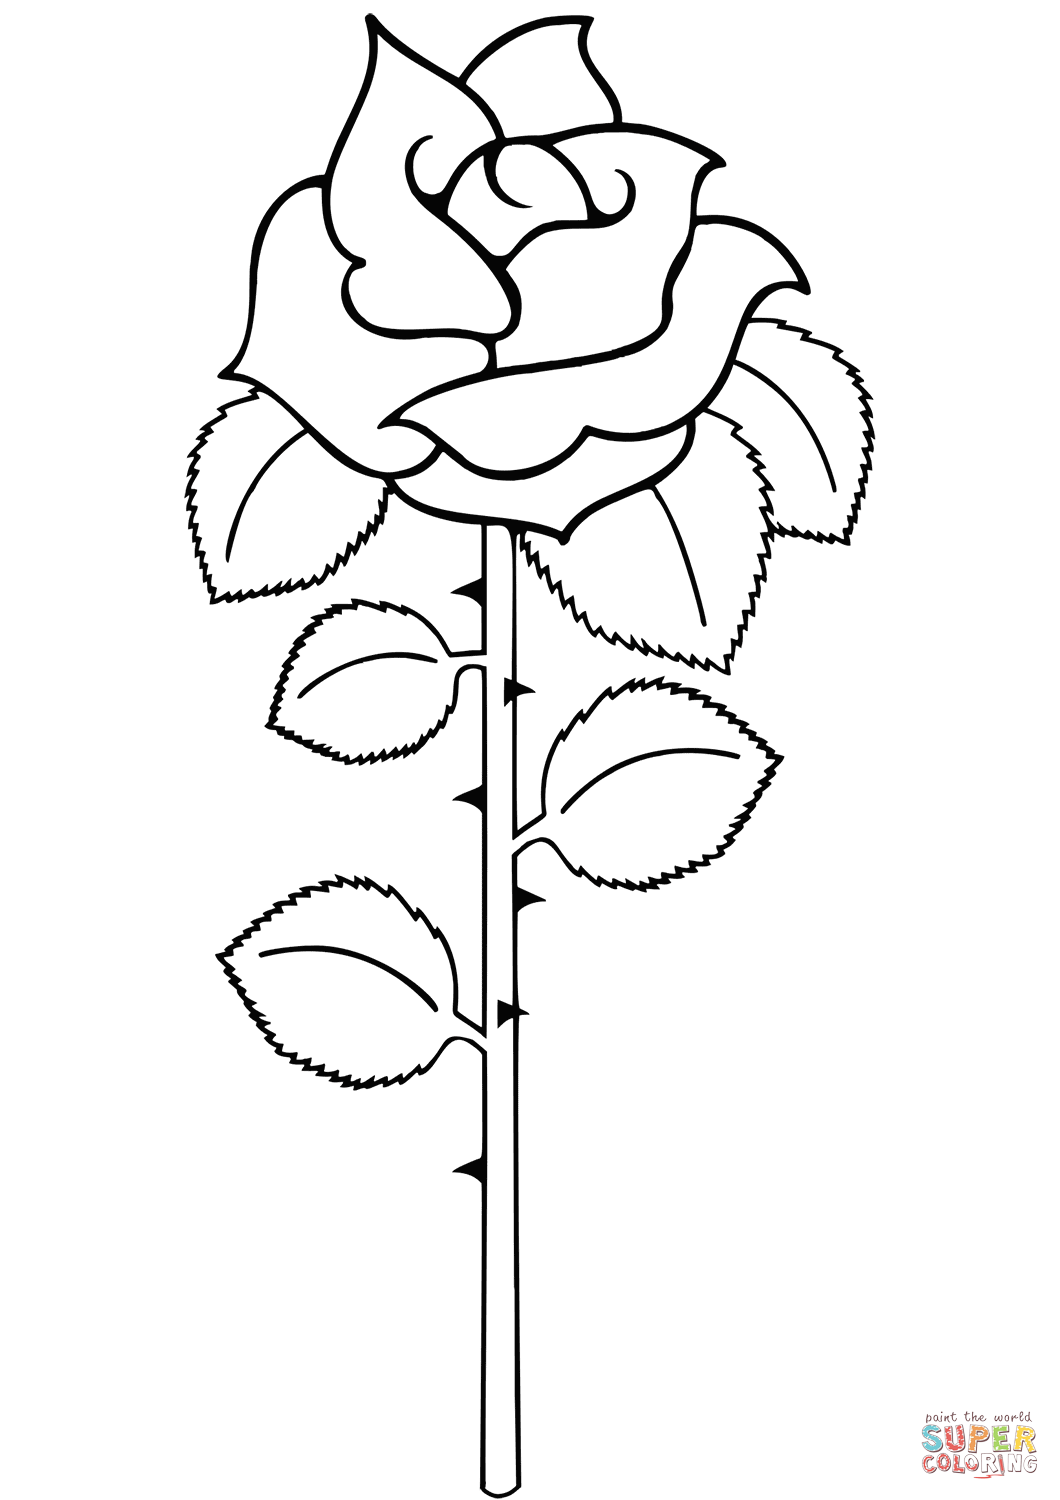 وردة بسيطة من الورود